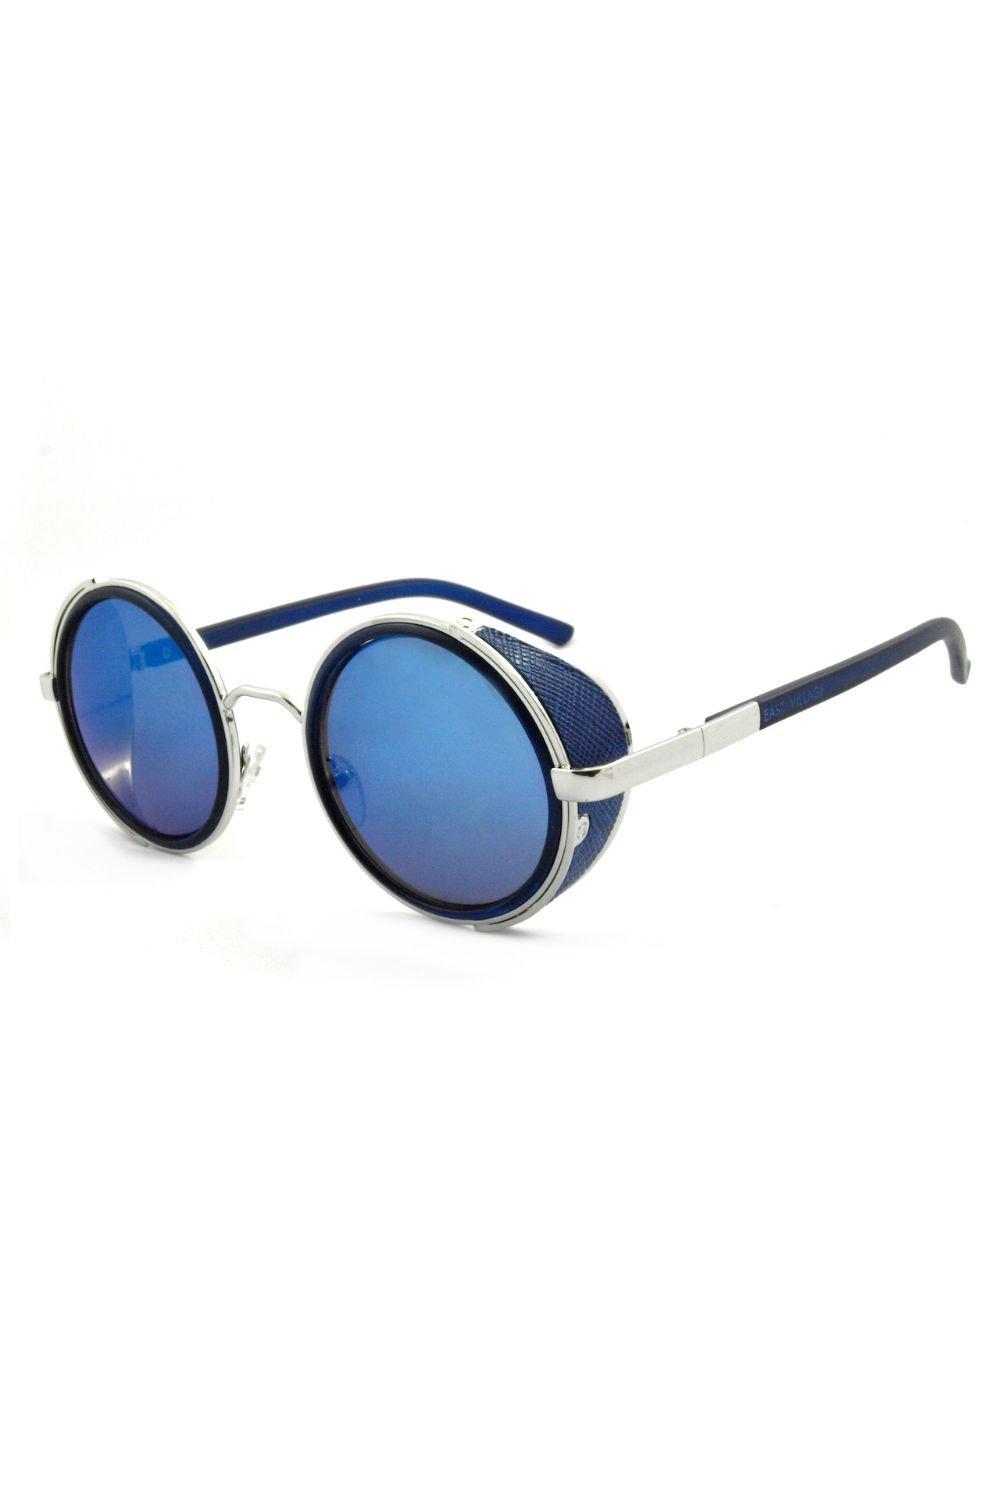 круглые солнцезащитные очки journeyman east village серебро Круглые солнцезащитные очки Freeman East Village, синий